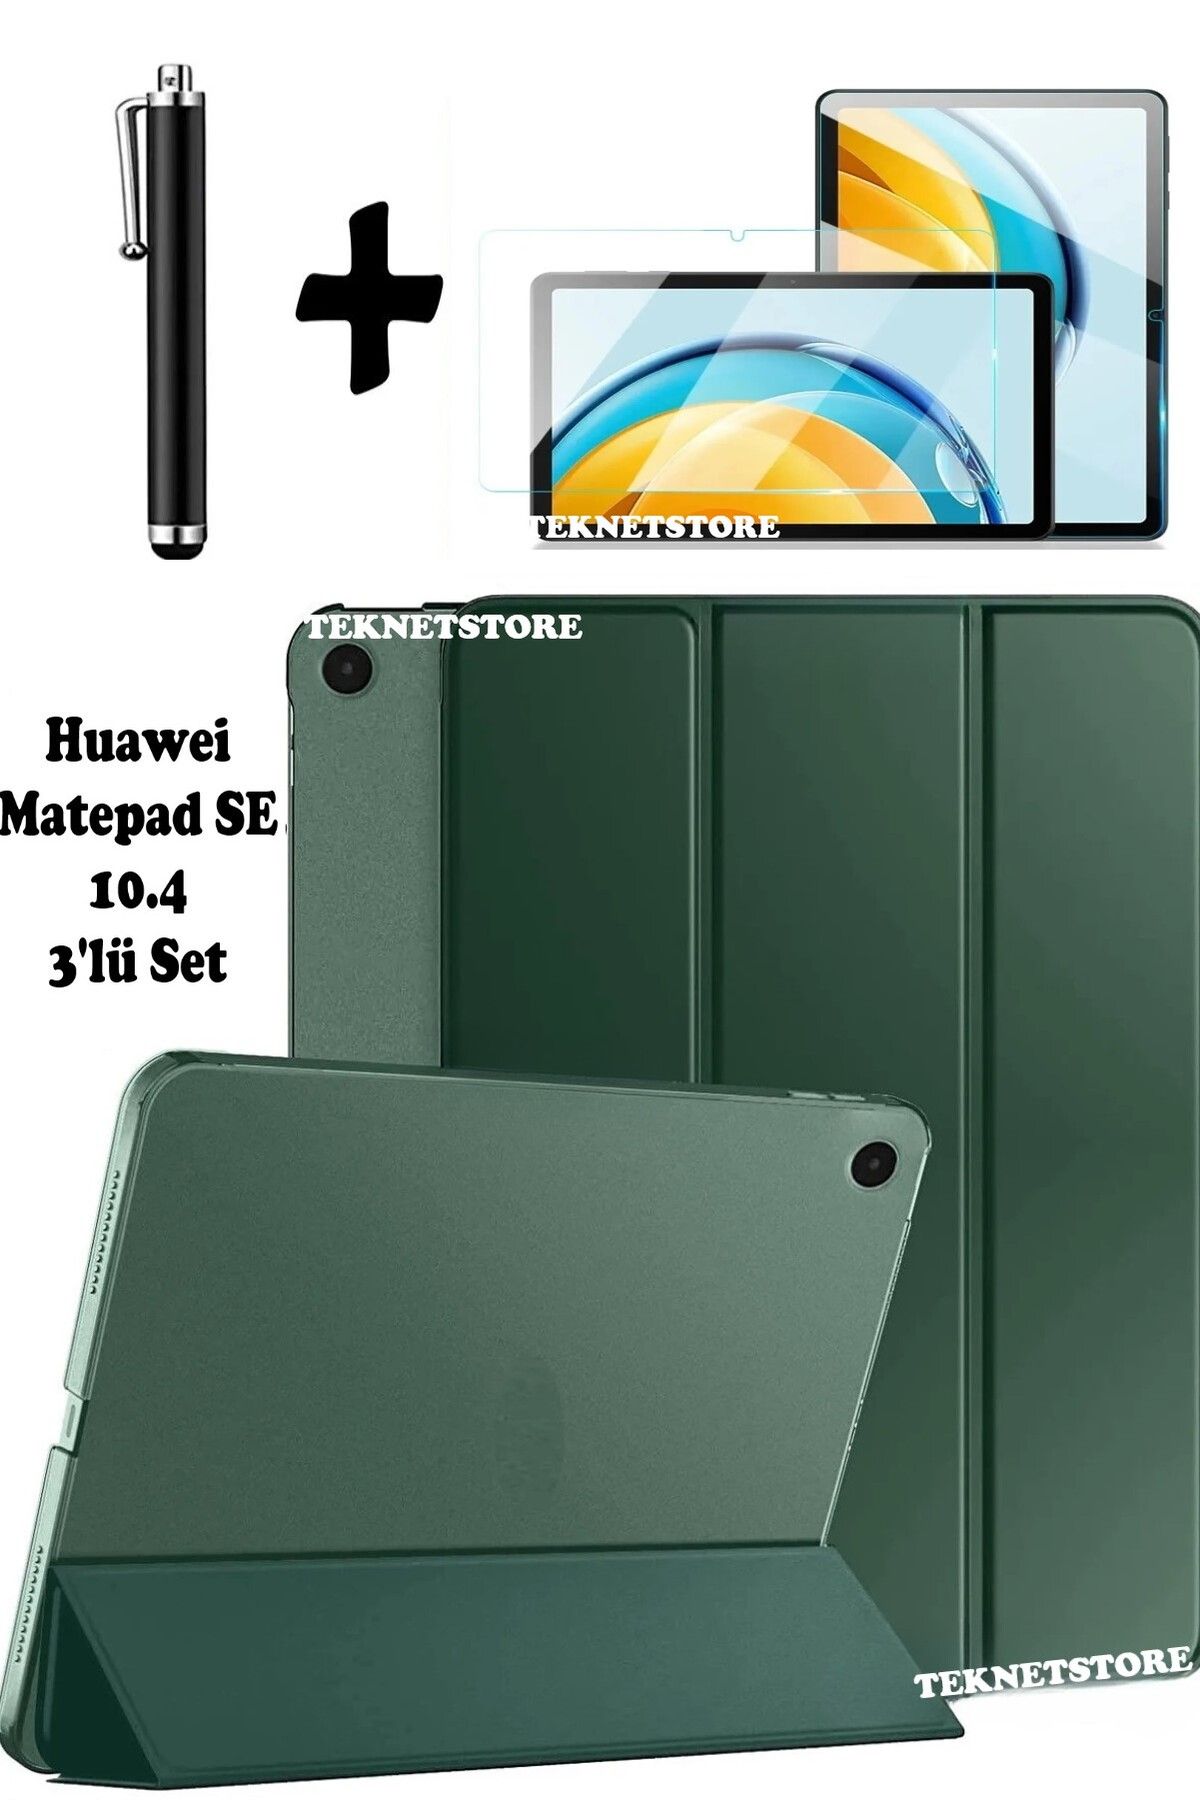 TEKNETSTORE Huawei Matepad Se 10.4 Uyumlu Flip Smart Standlı Uyku Modlu Tablet Kılıfı Ekran Koruyucu Kalem